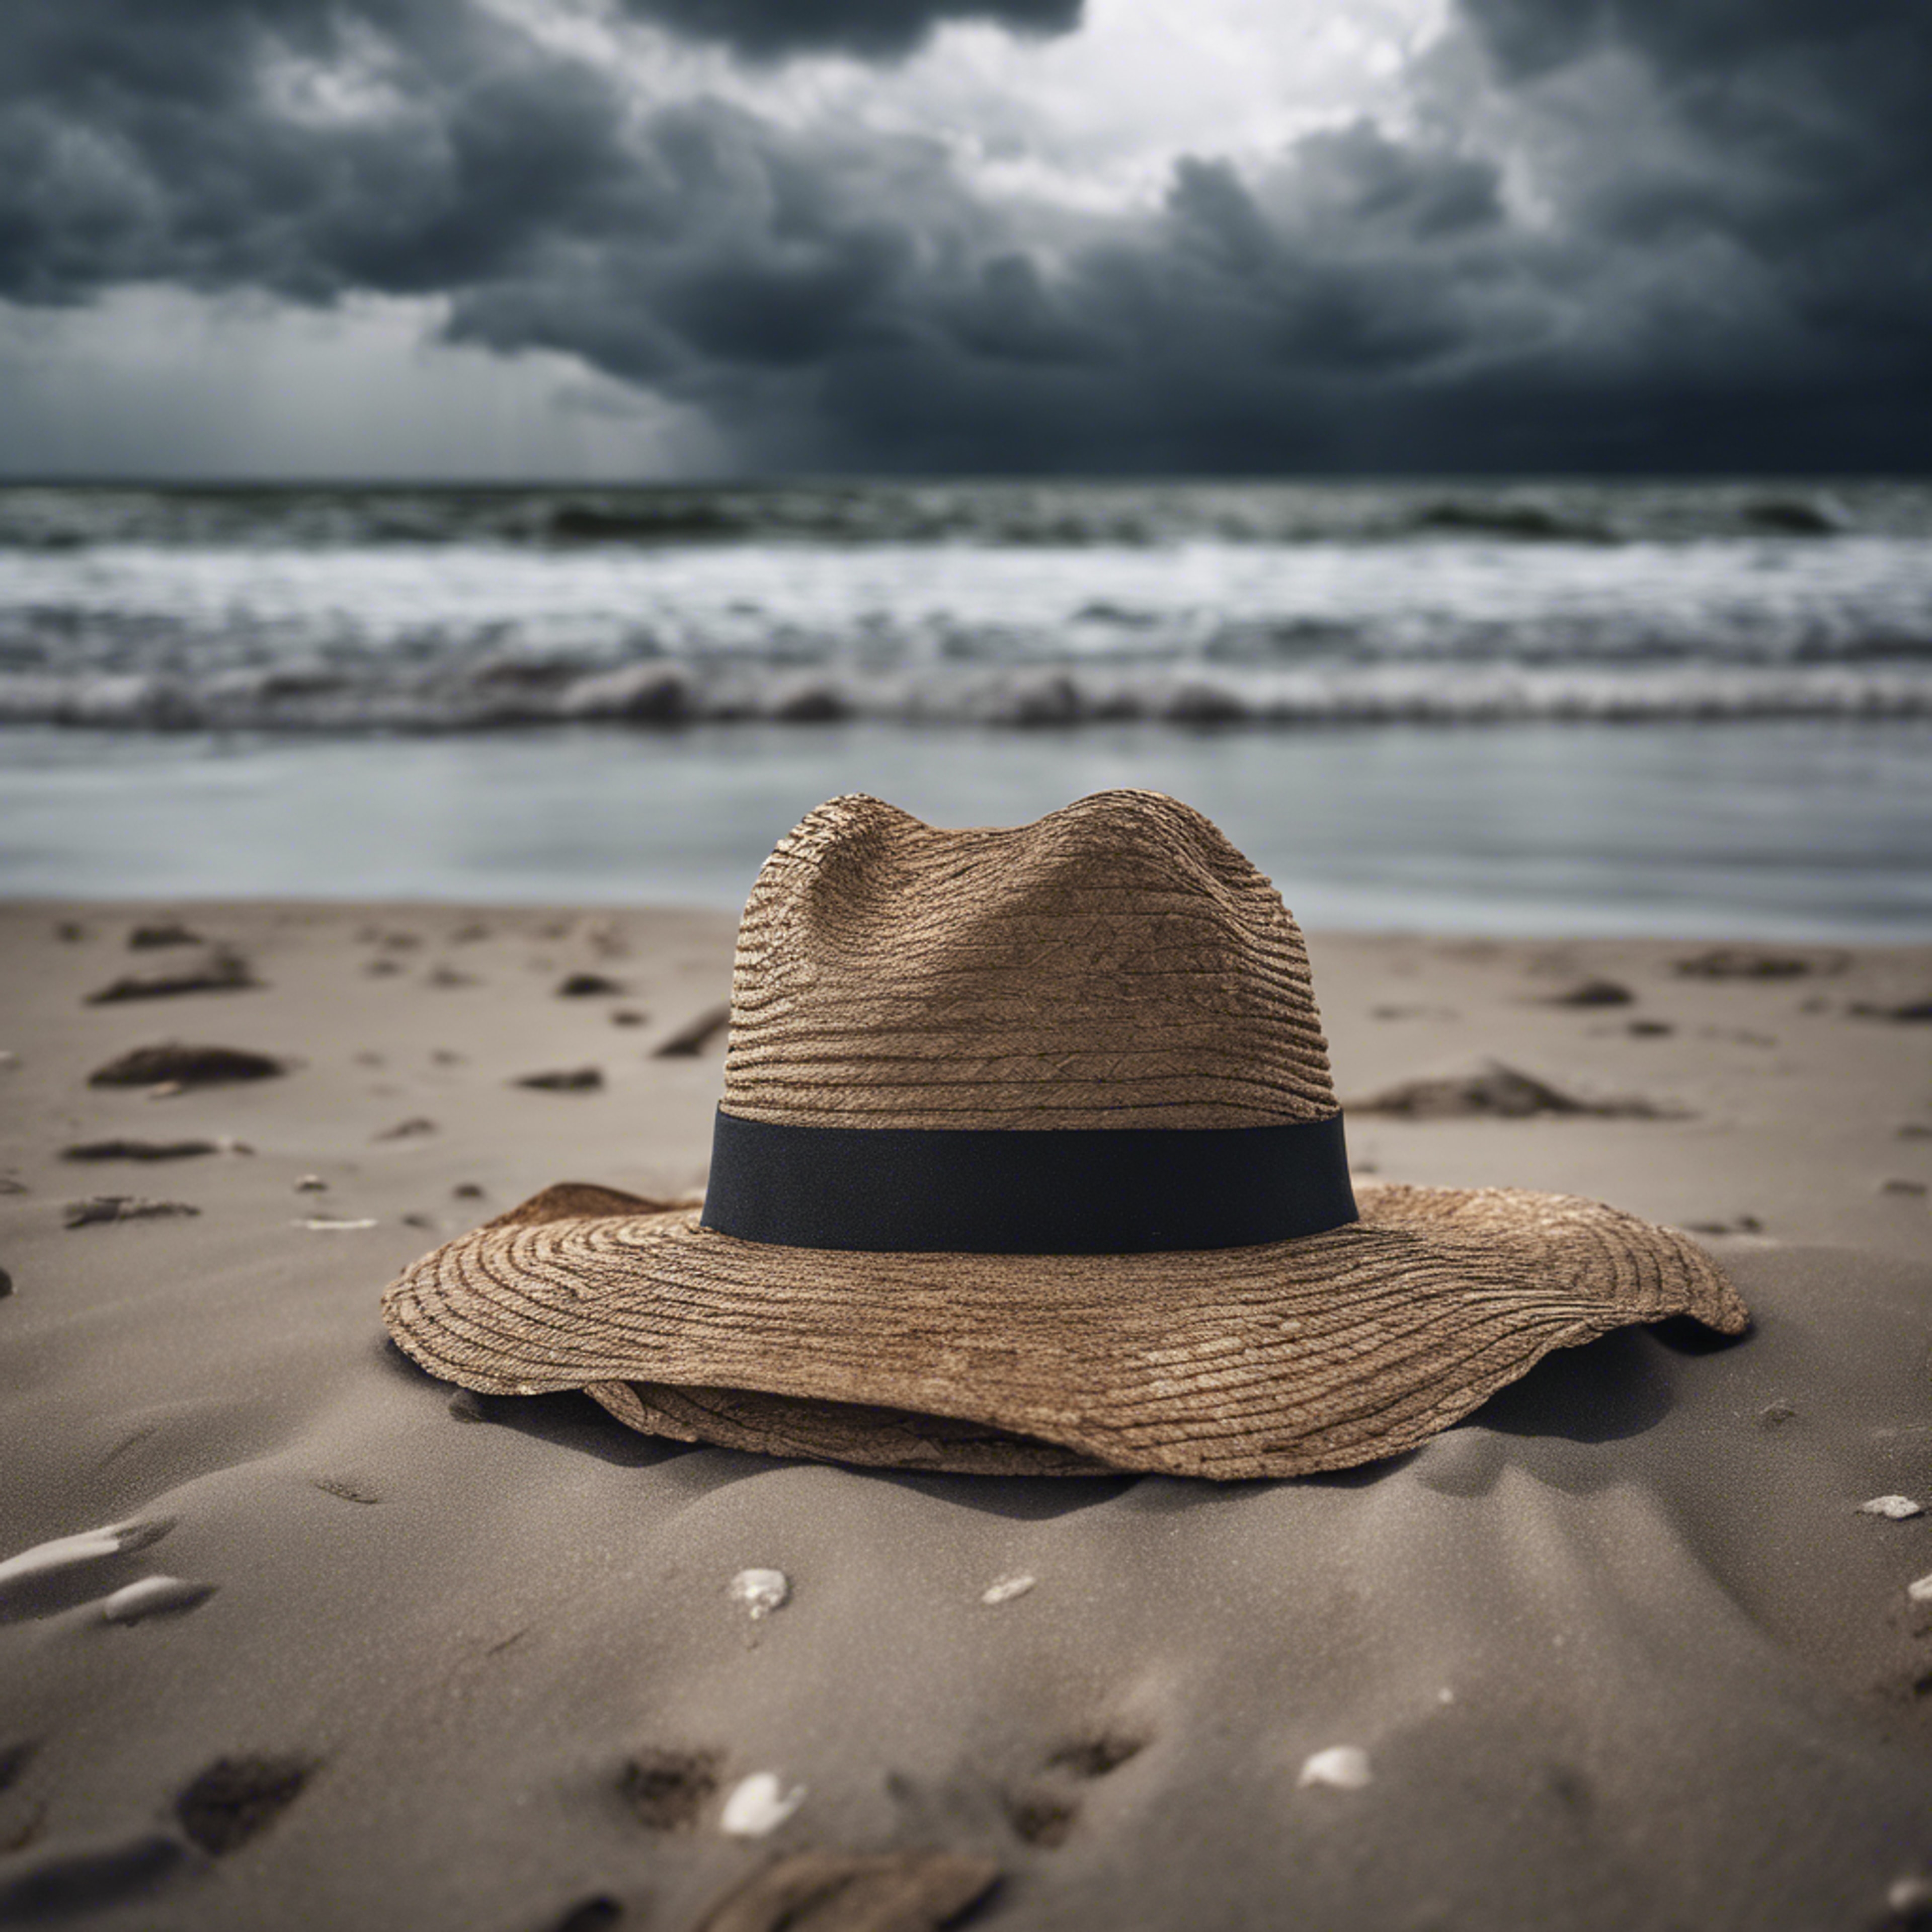 A single, forsaken hat blowing across a desolate beach under a stormy sky. Tapetai[22c522374a7d402da3d5]